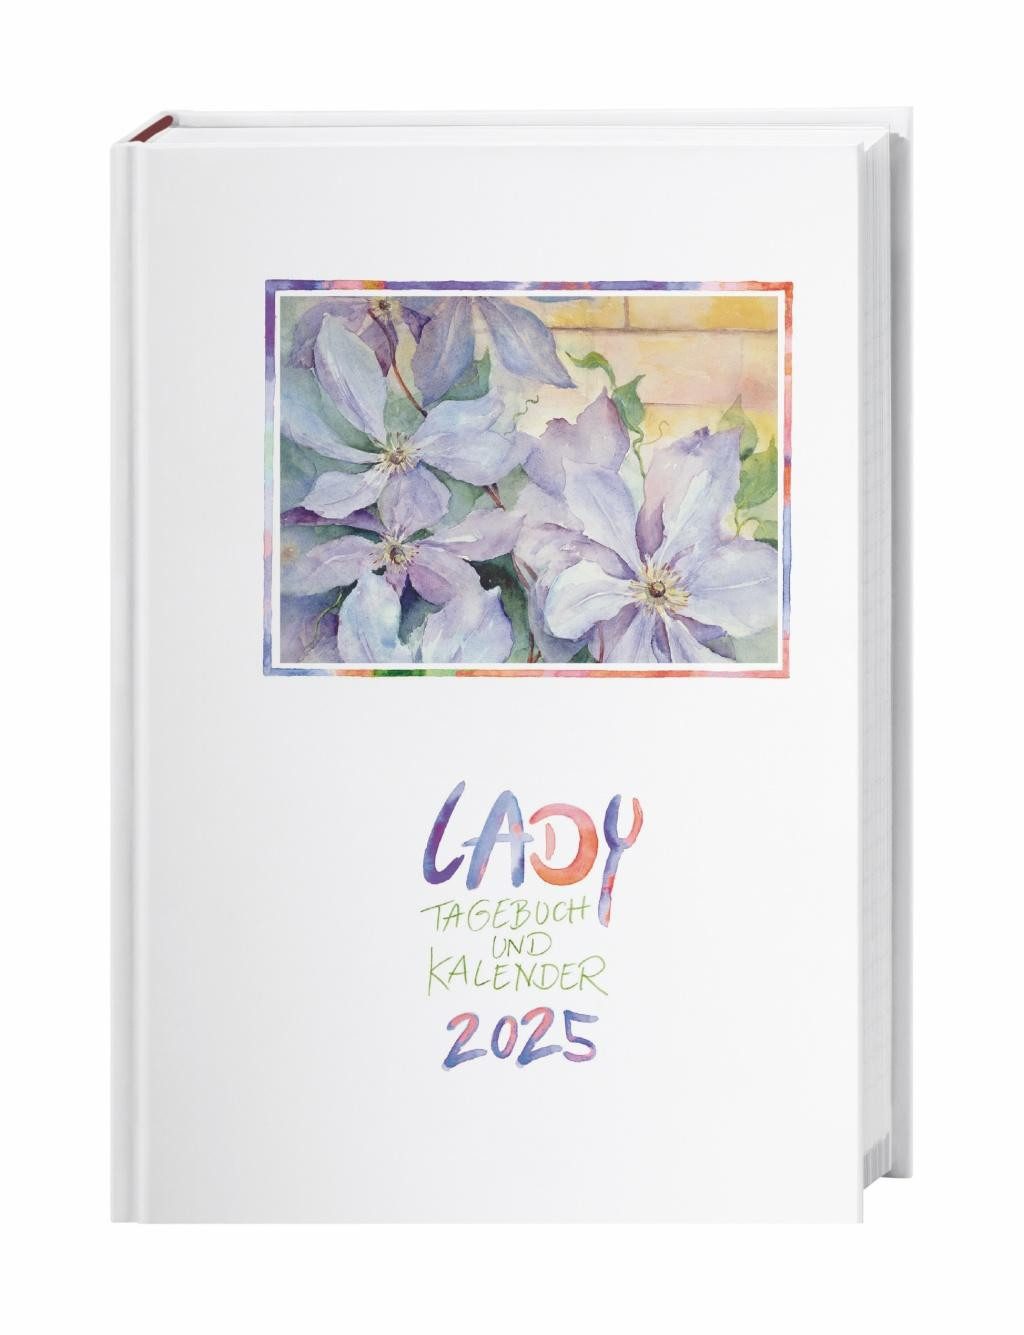 HEYE Terminkalender Lady Tagebuch A5 2025